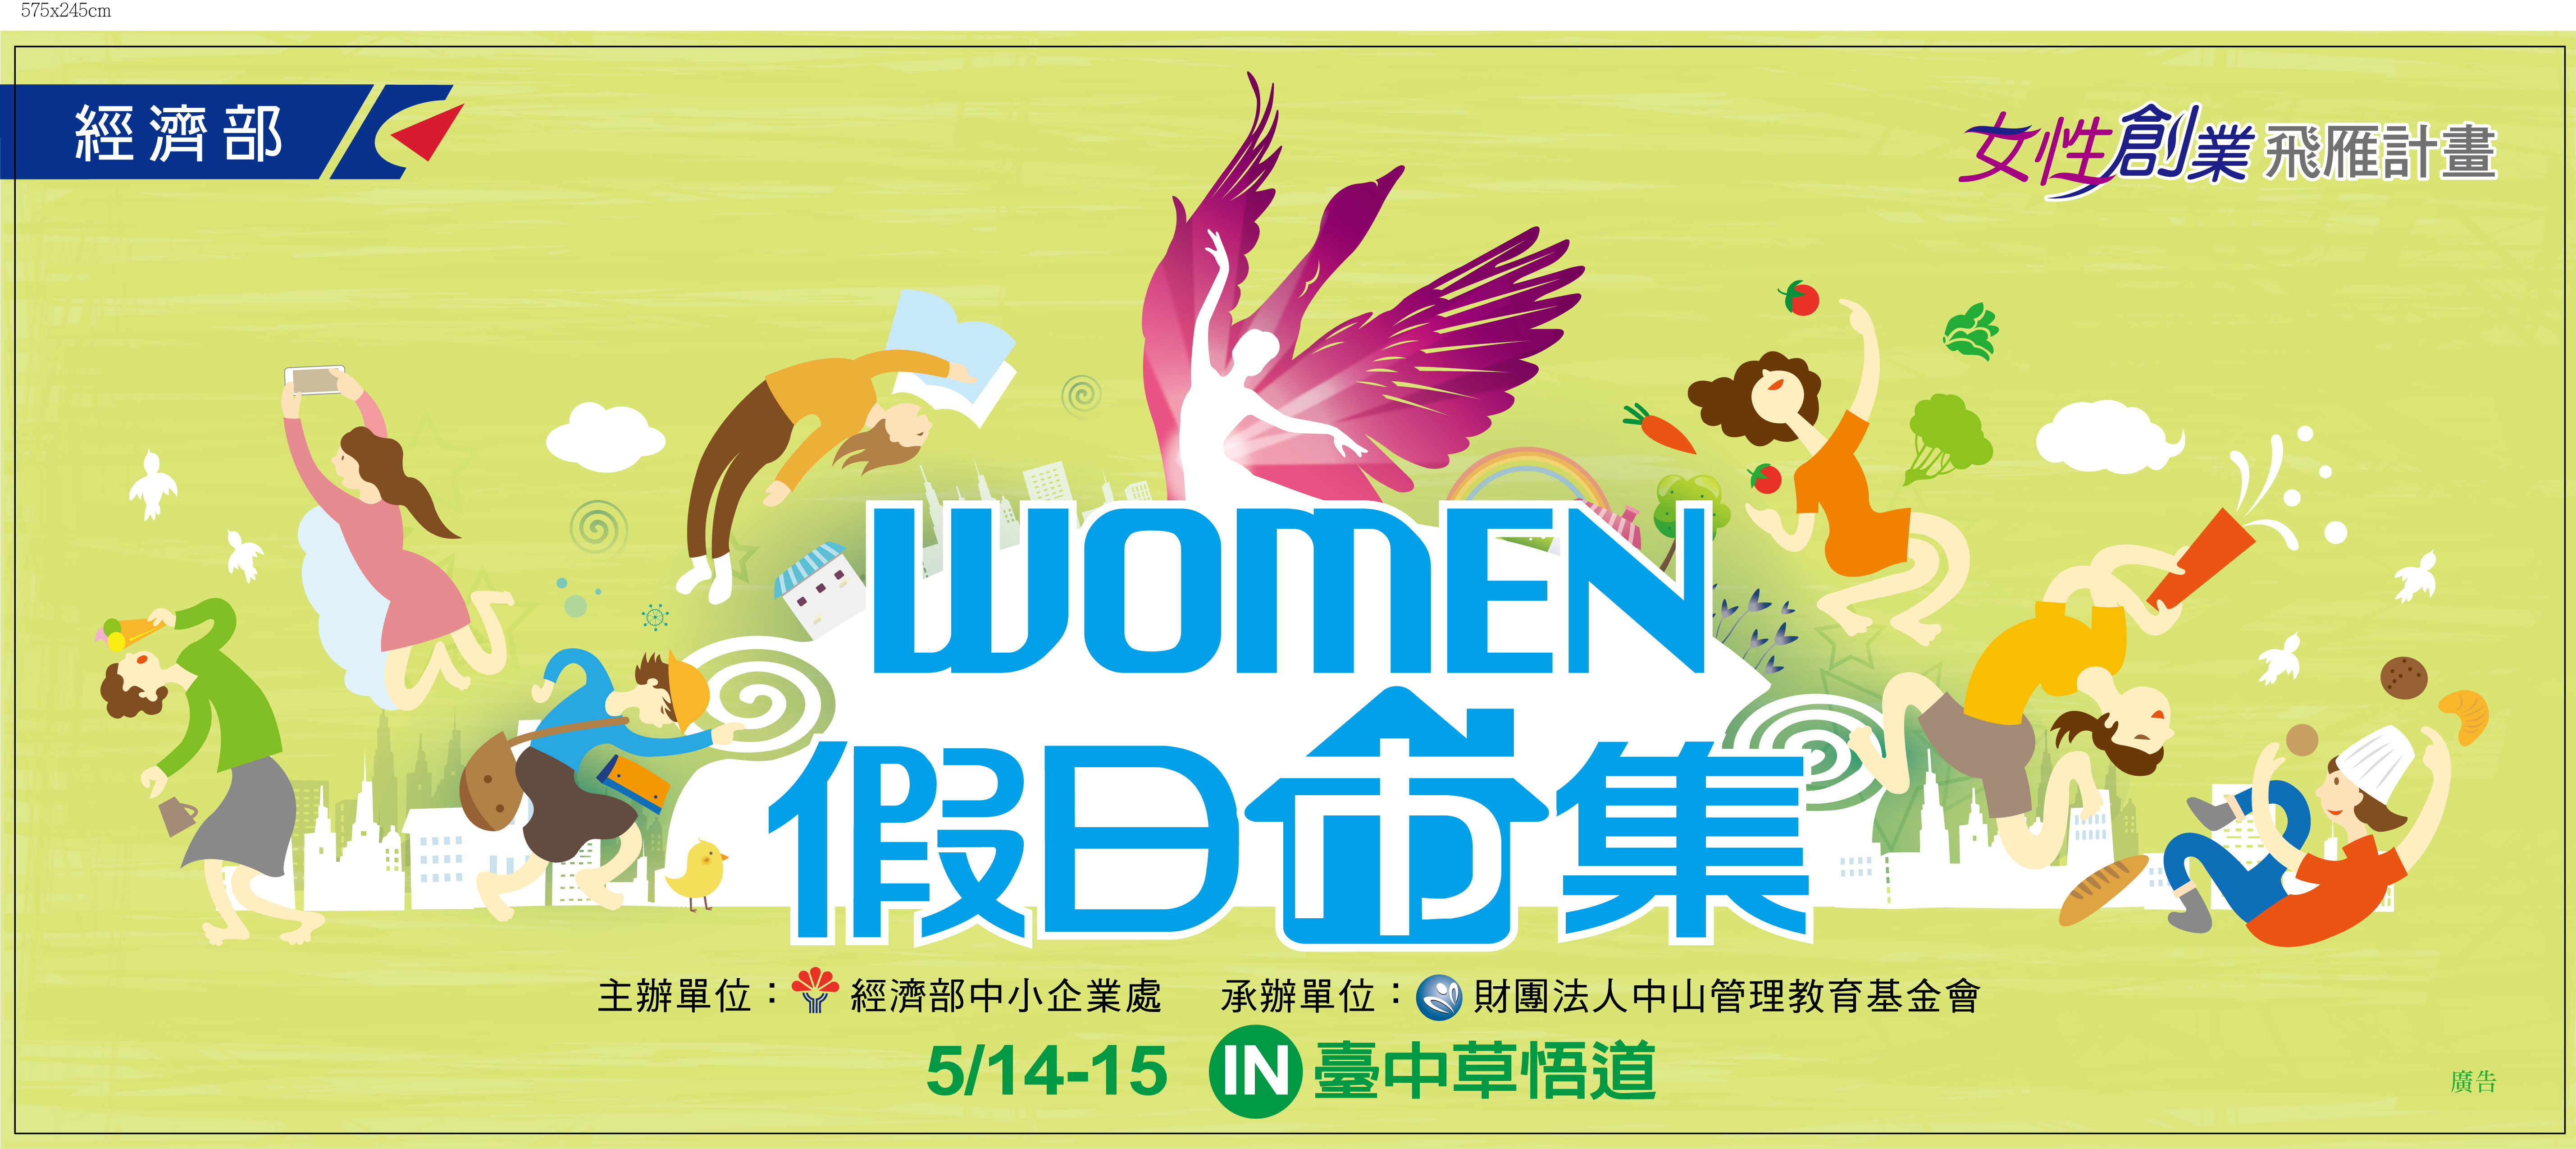 105年女性創業飛雁計畫-Women 的假日市集